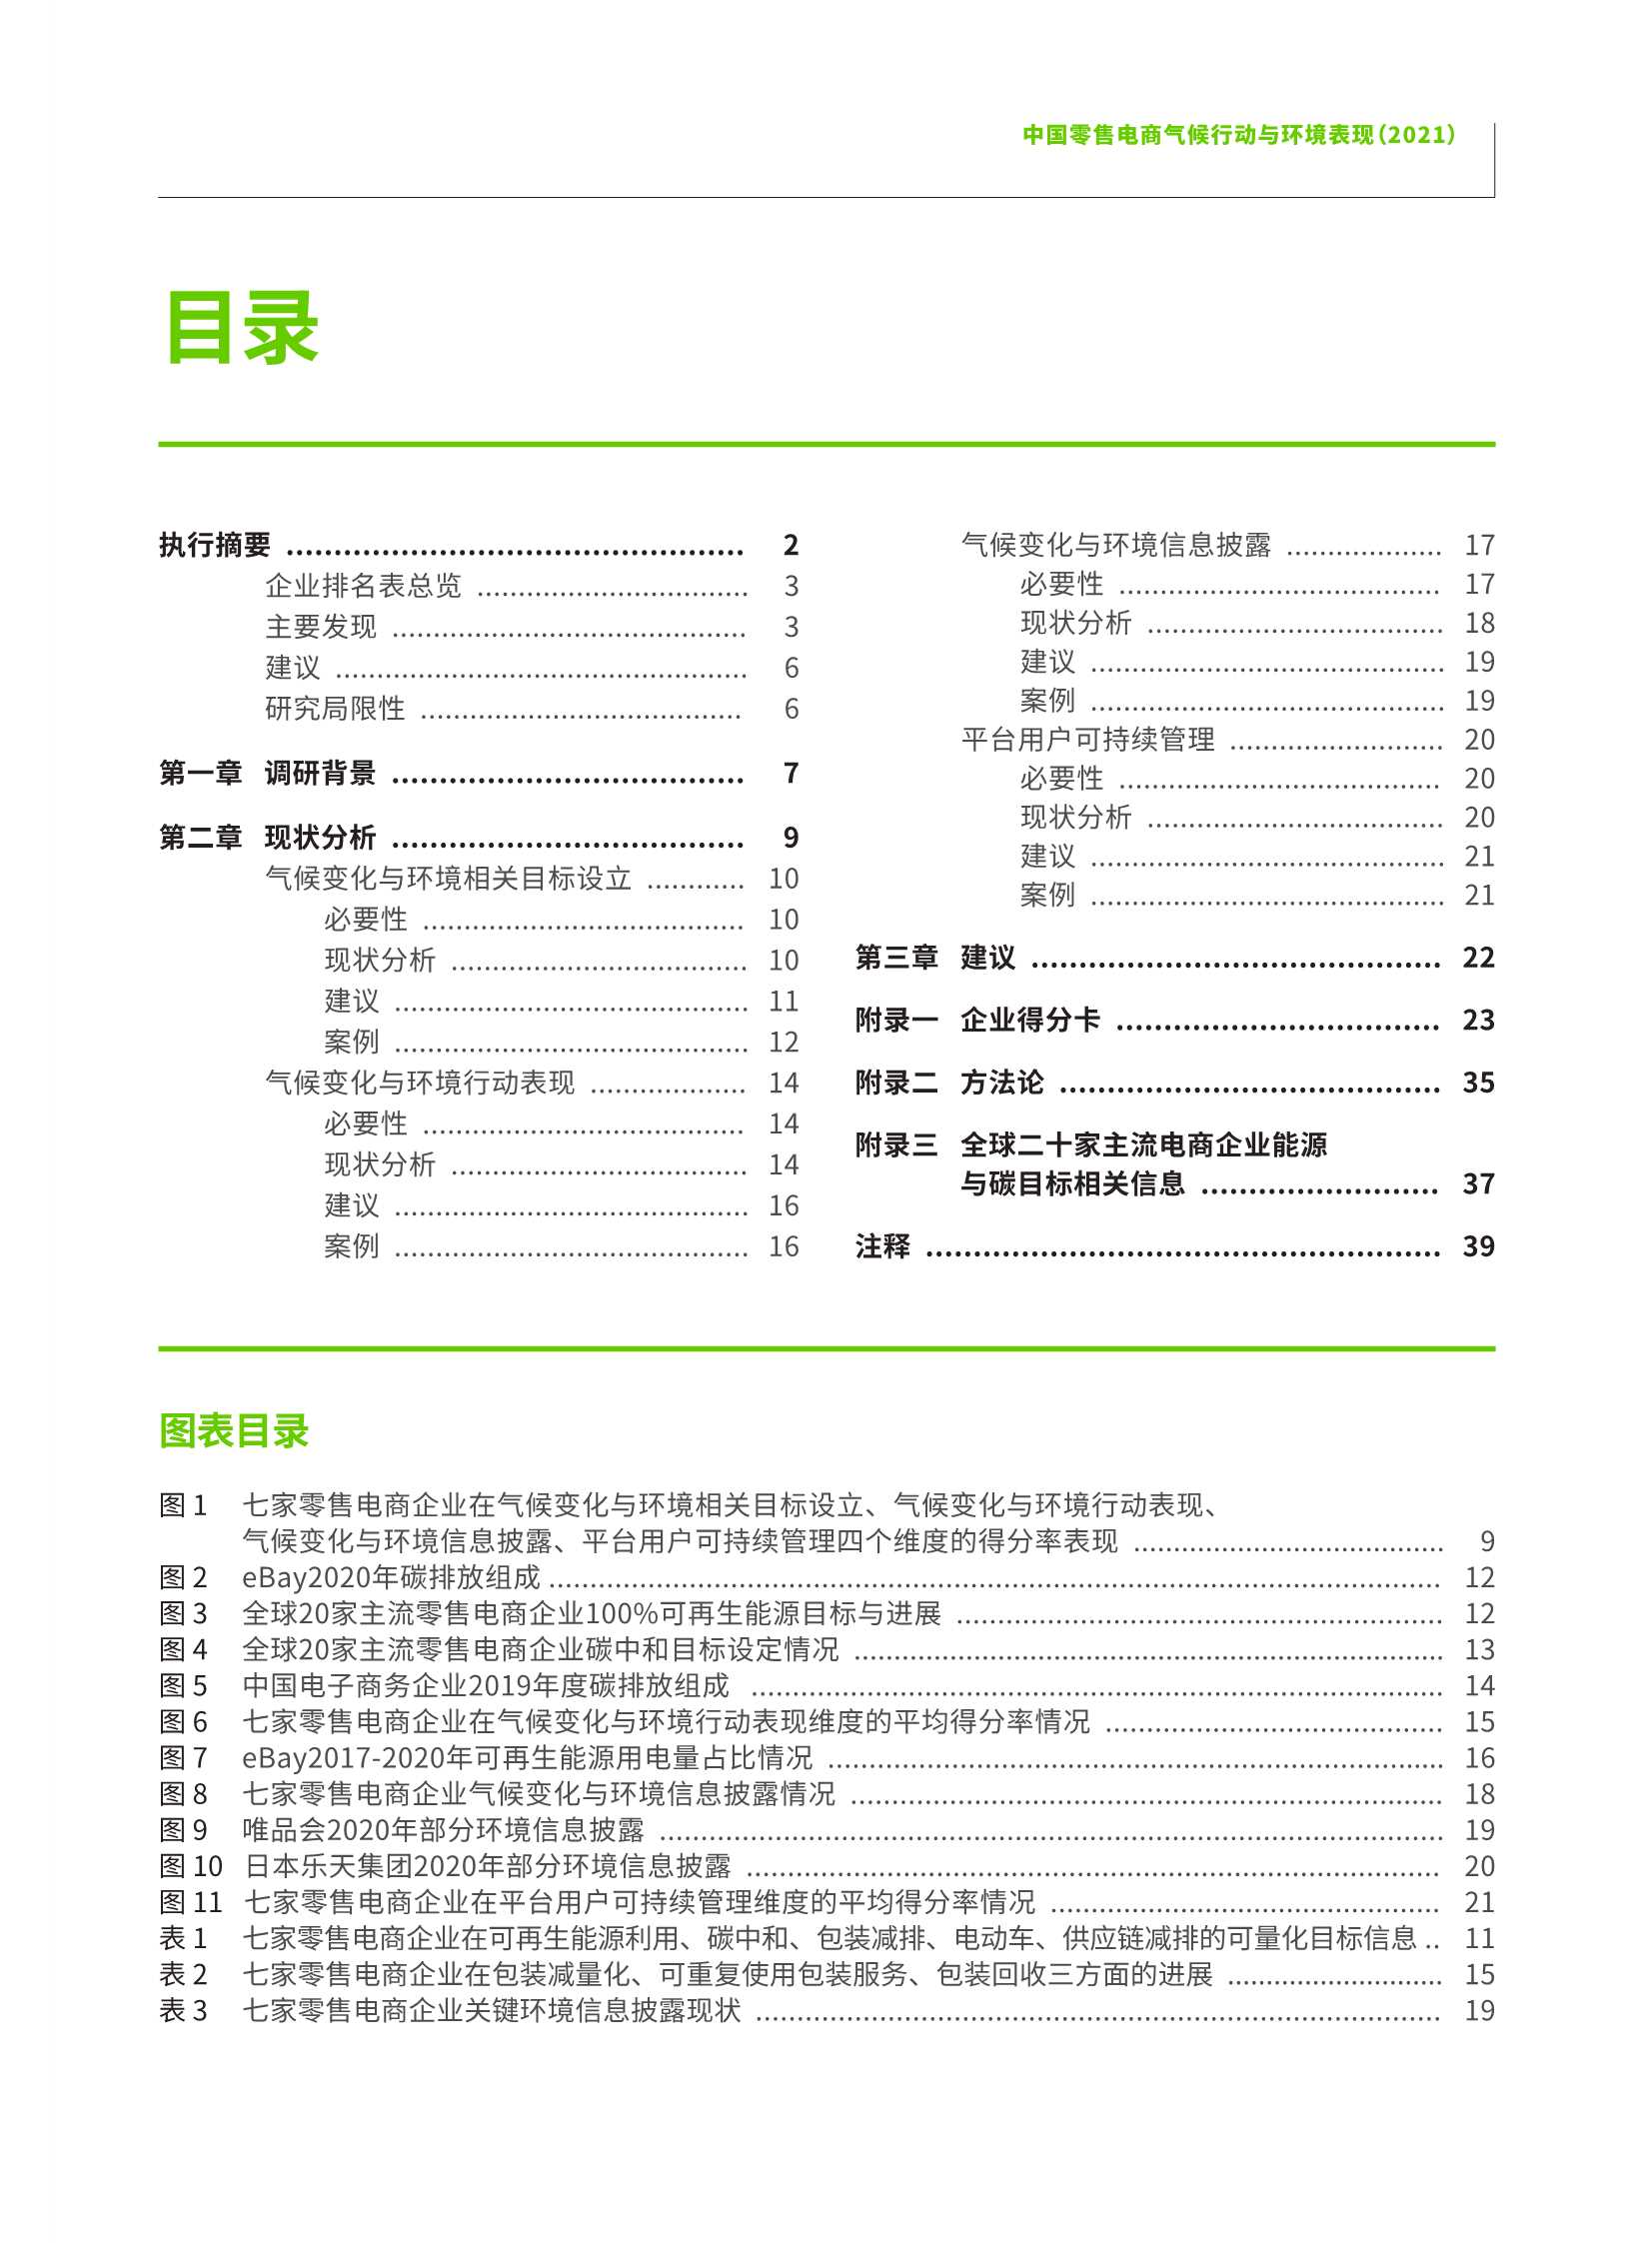 绿色和平&中华环保联合会-中国零售电商气候行动与环境表现（2021）-2022.03-44页